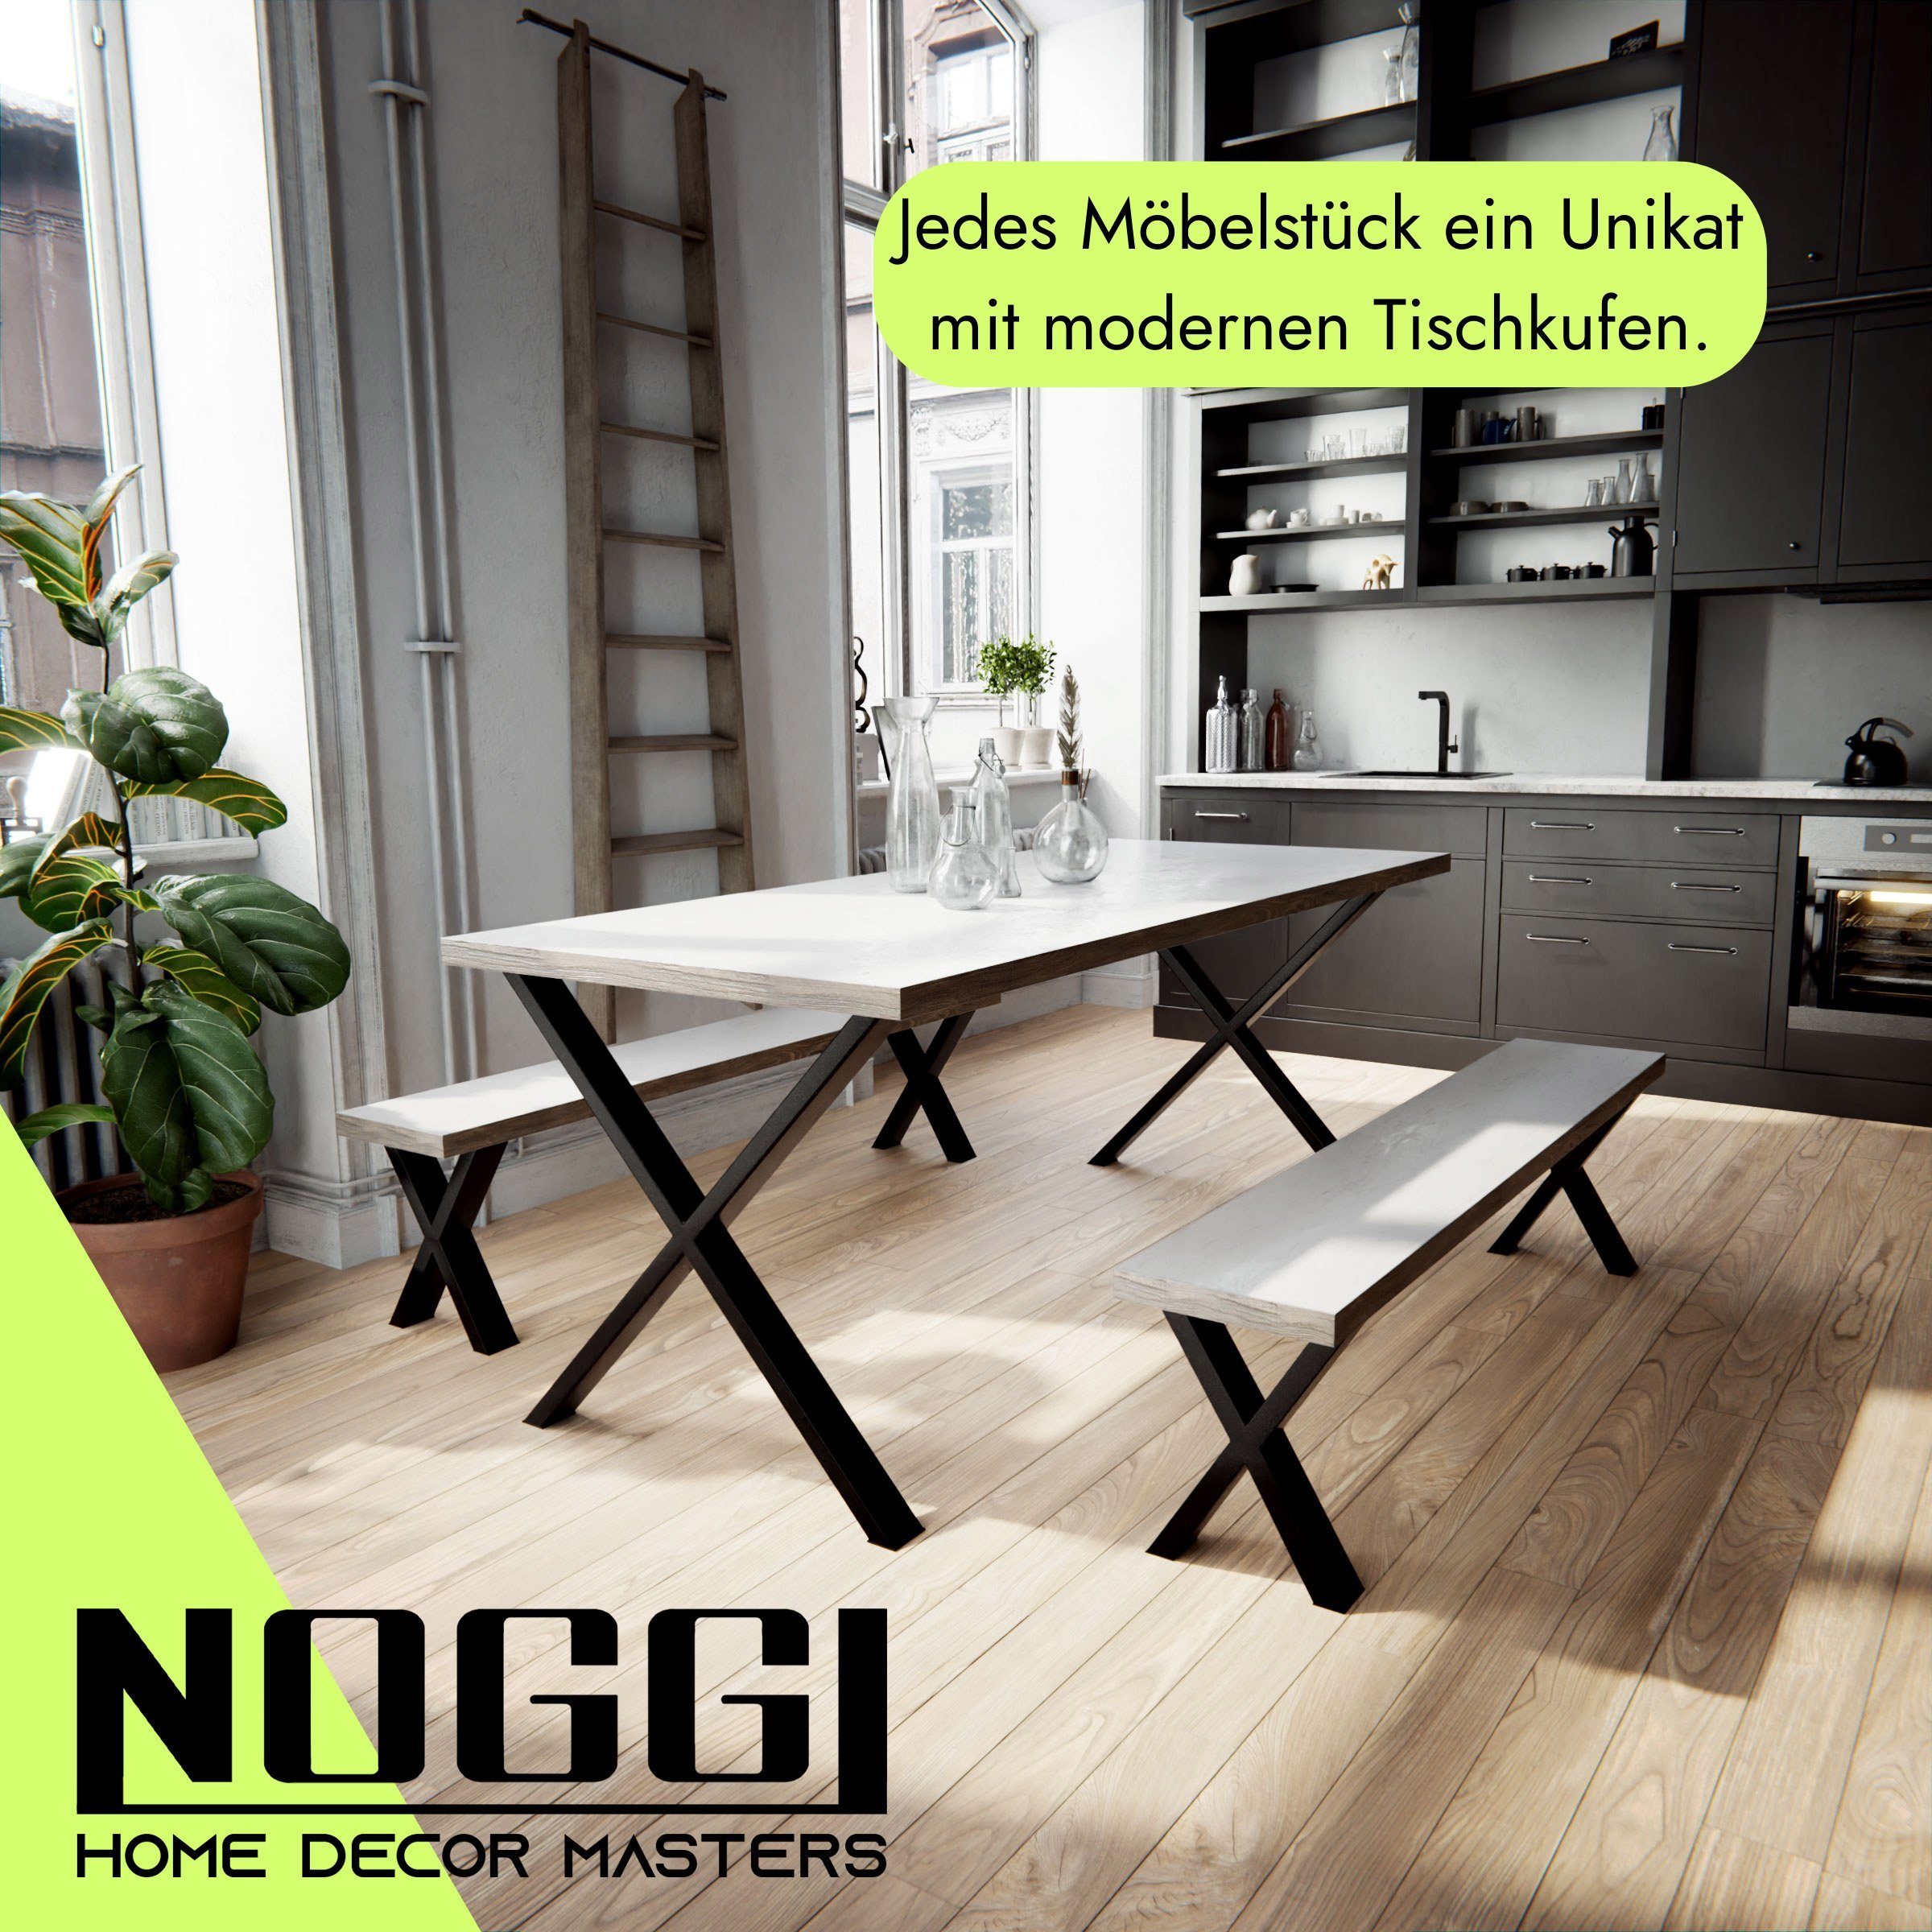 DIY-Home Projekt - Decor cm NOGGI Tischbein Home Dein für Masters Tischkufen Sitzbank Form, X- - 30x40 I - schwarz Möbelkufen 2